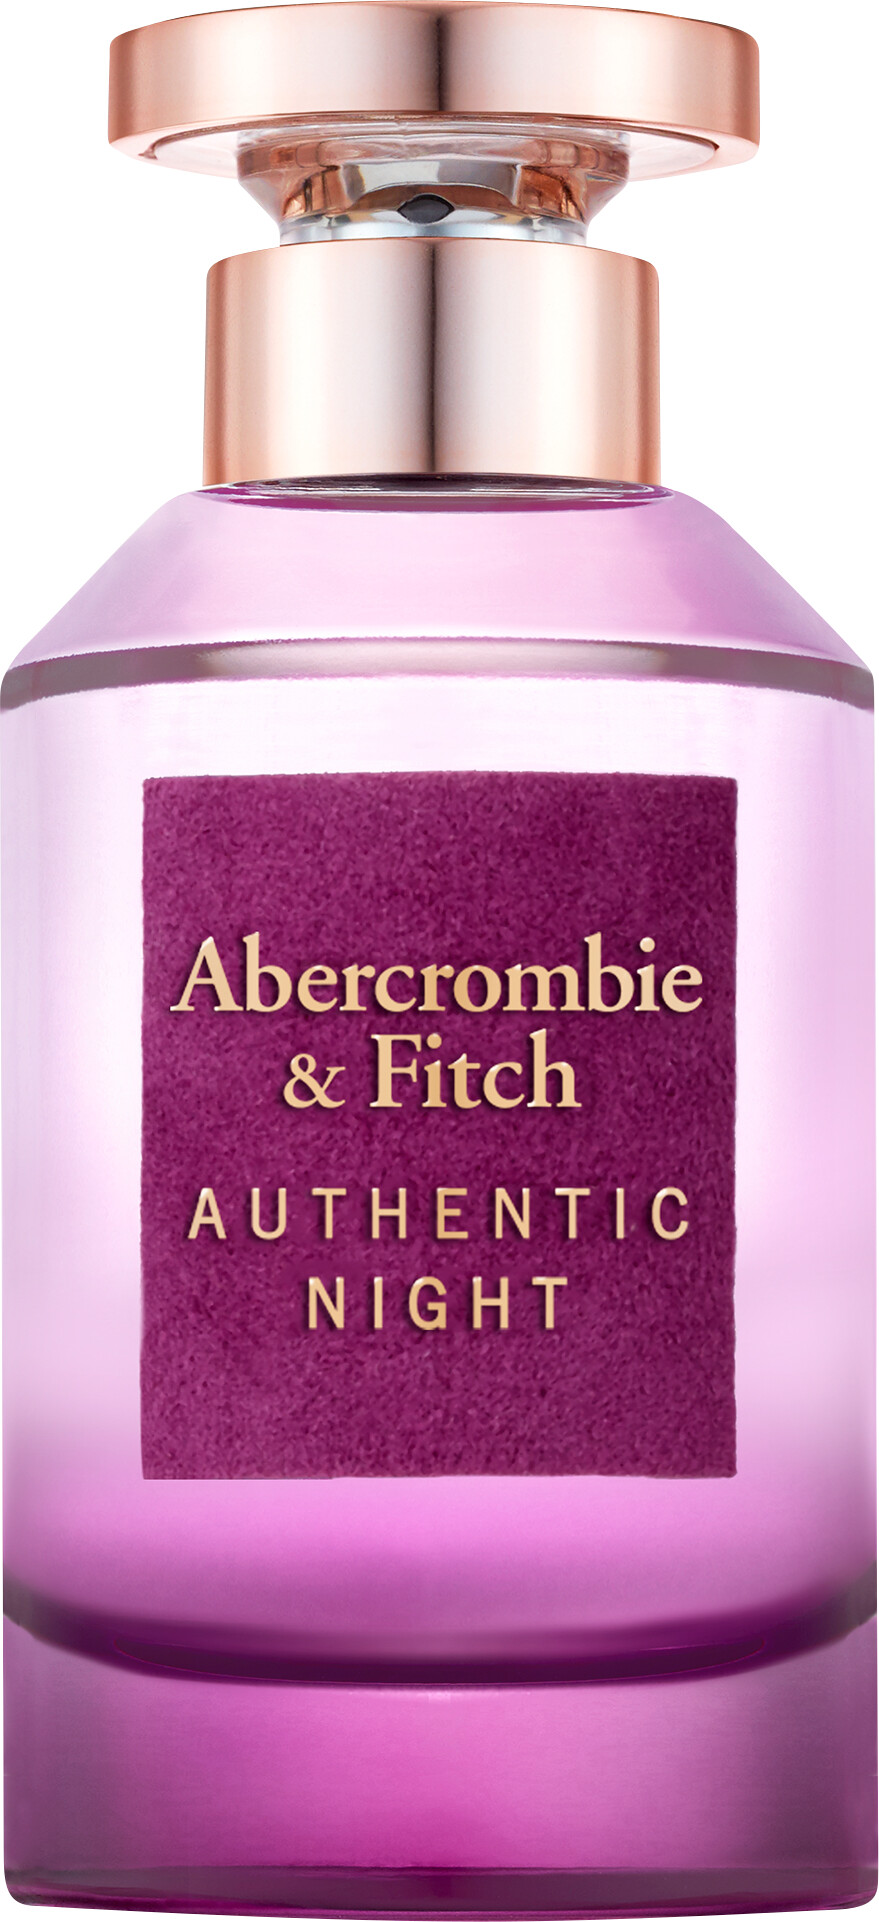 Abercrombie & Fitch Authentic Night For Women Eau de Parfum